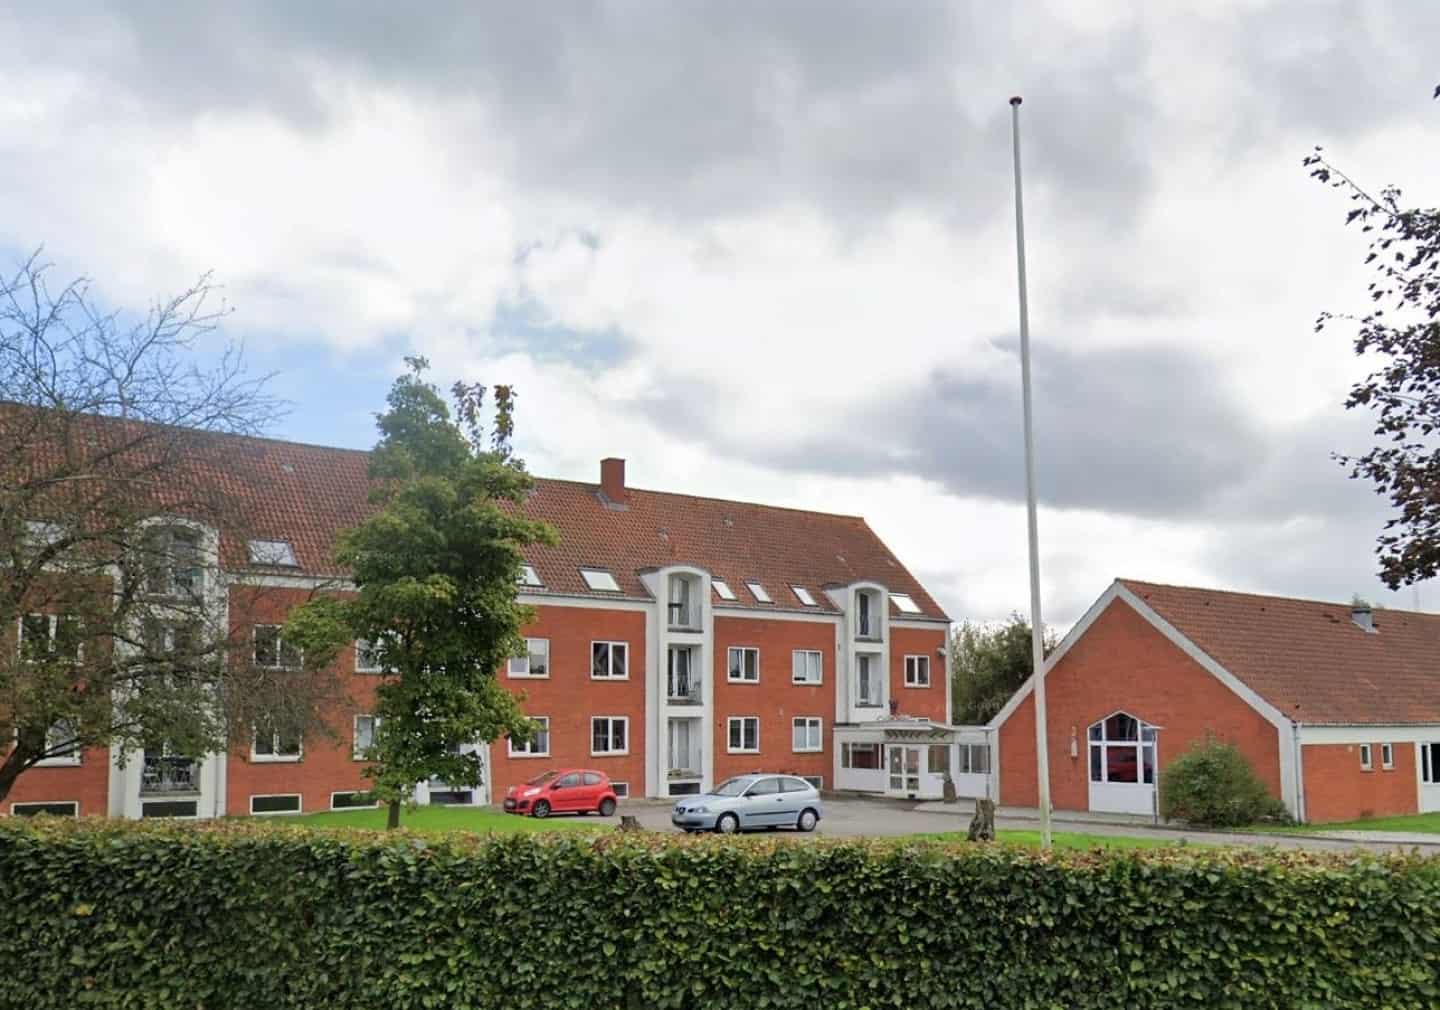 Kendt kollegium i Odense får gigantisk gave: skal det renoveres fra kælder til kvist | fyens.dk